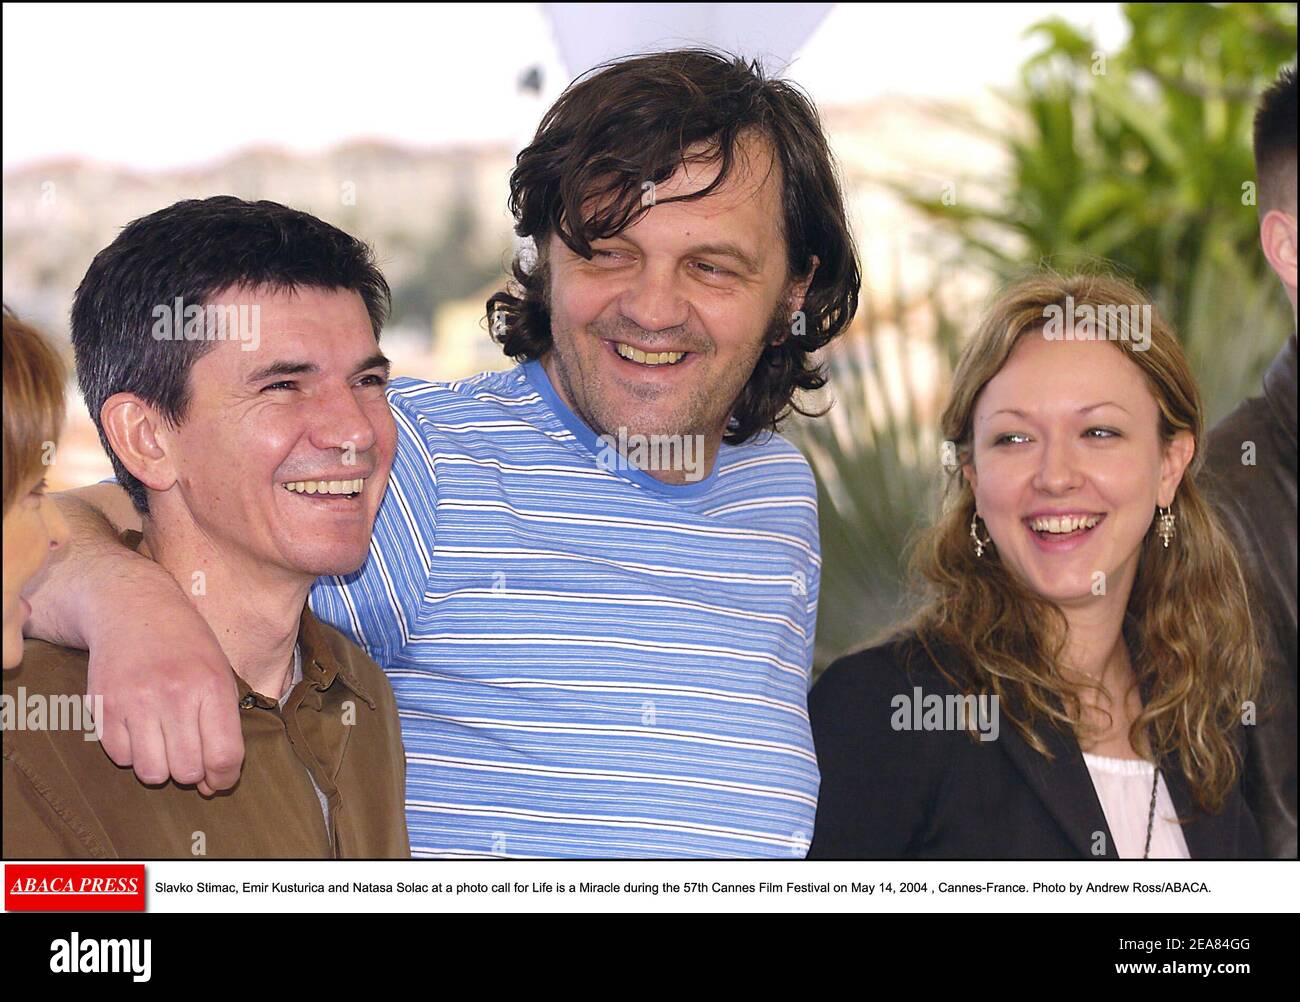 Slavko Stimac, Emir Kusturica e Natasa Solak ad una chiamata fotografica per la vita è un miracolo durante il 57esimo Festival di Cannes il 14 maggio 2004 , Cannes-Francia. Foto di Andrew Ross/ABACA. Foto Stock